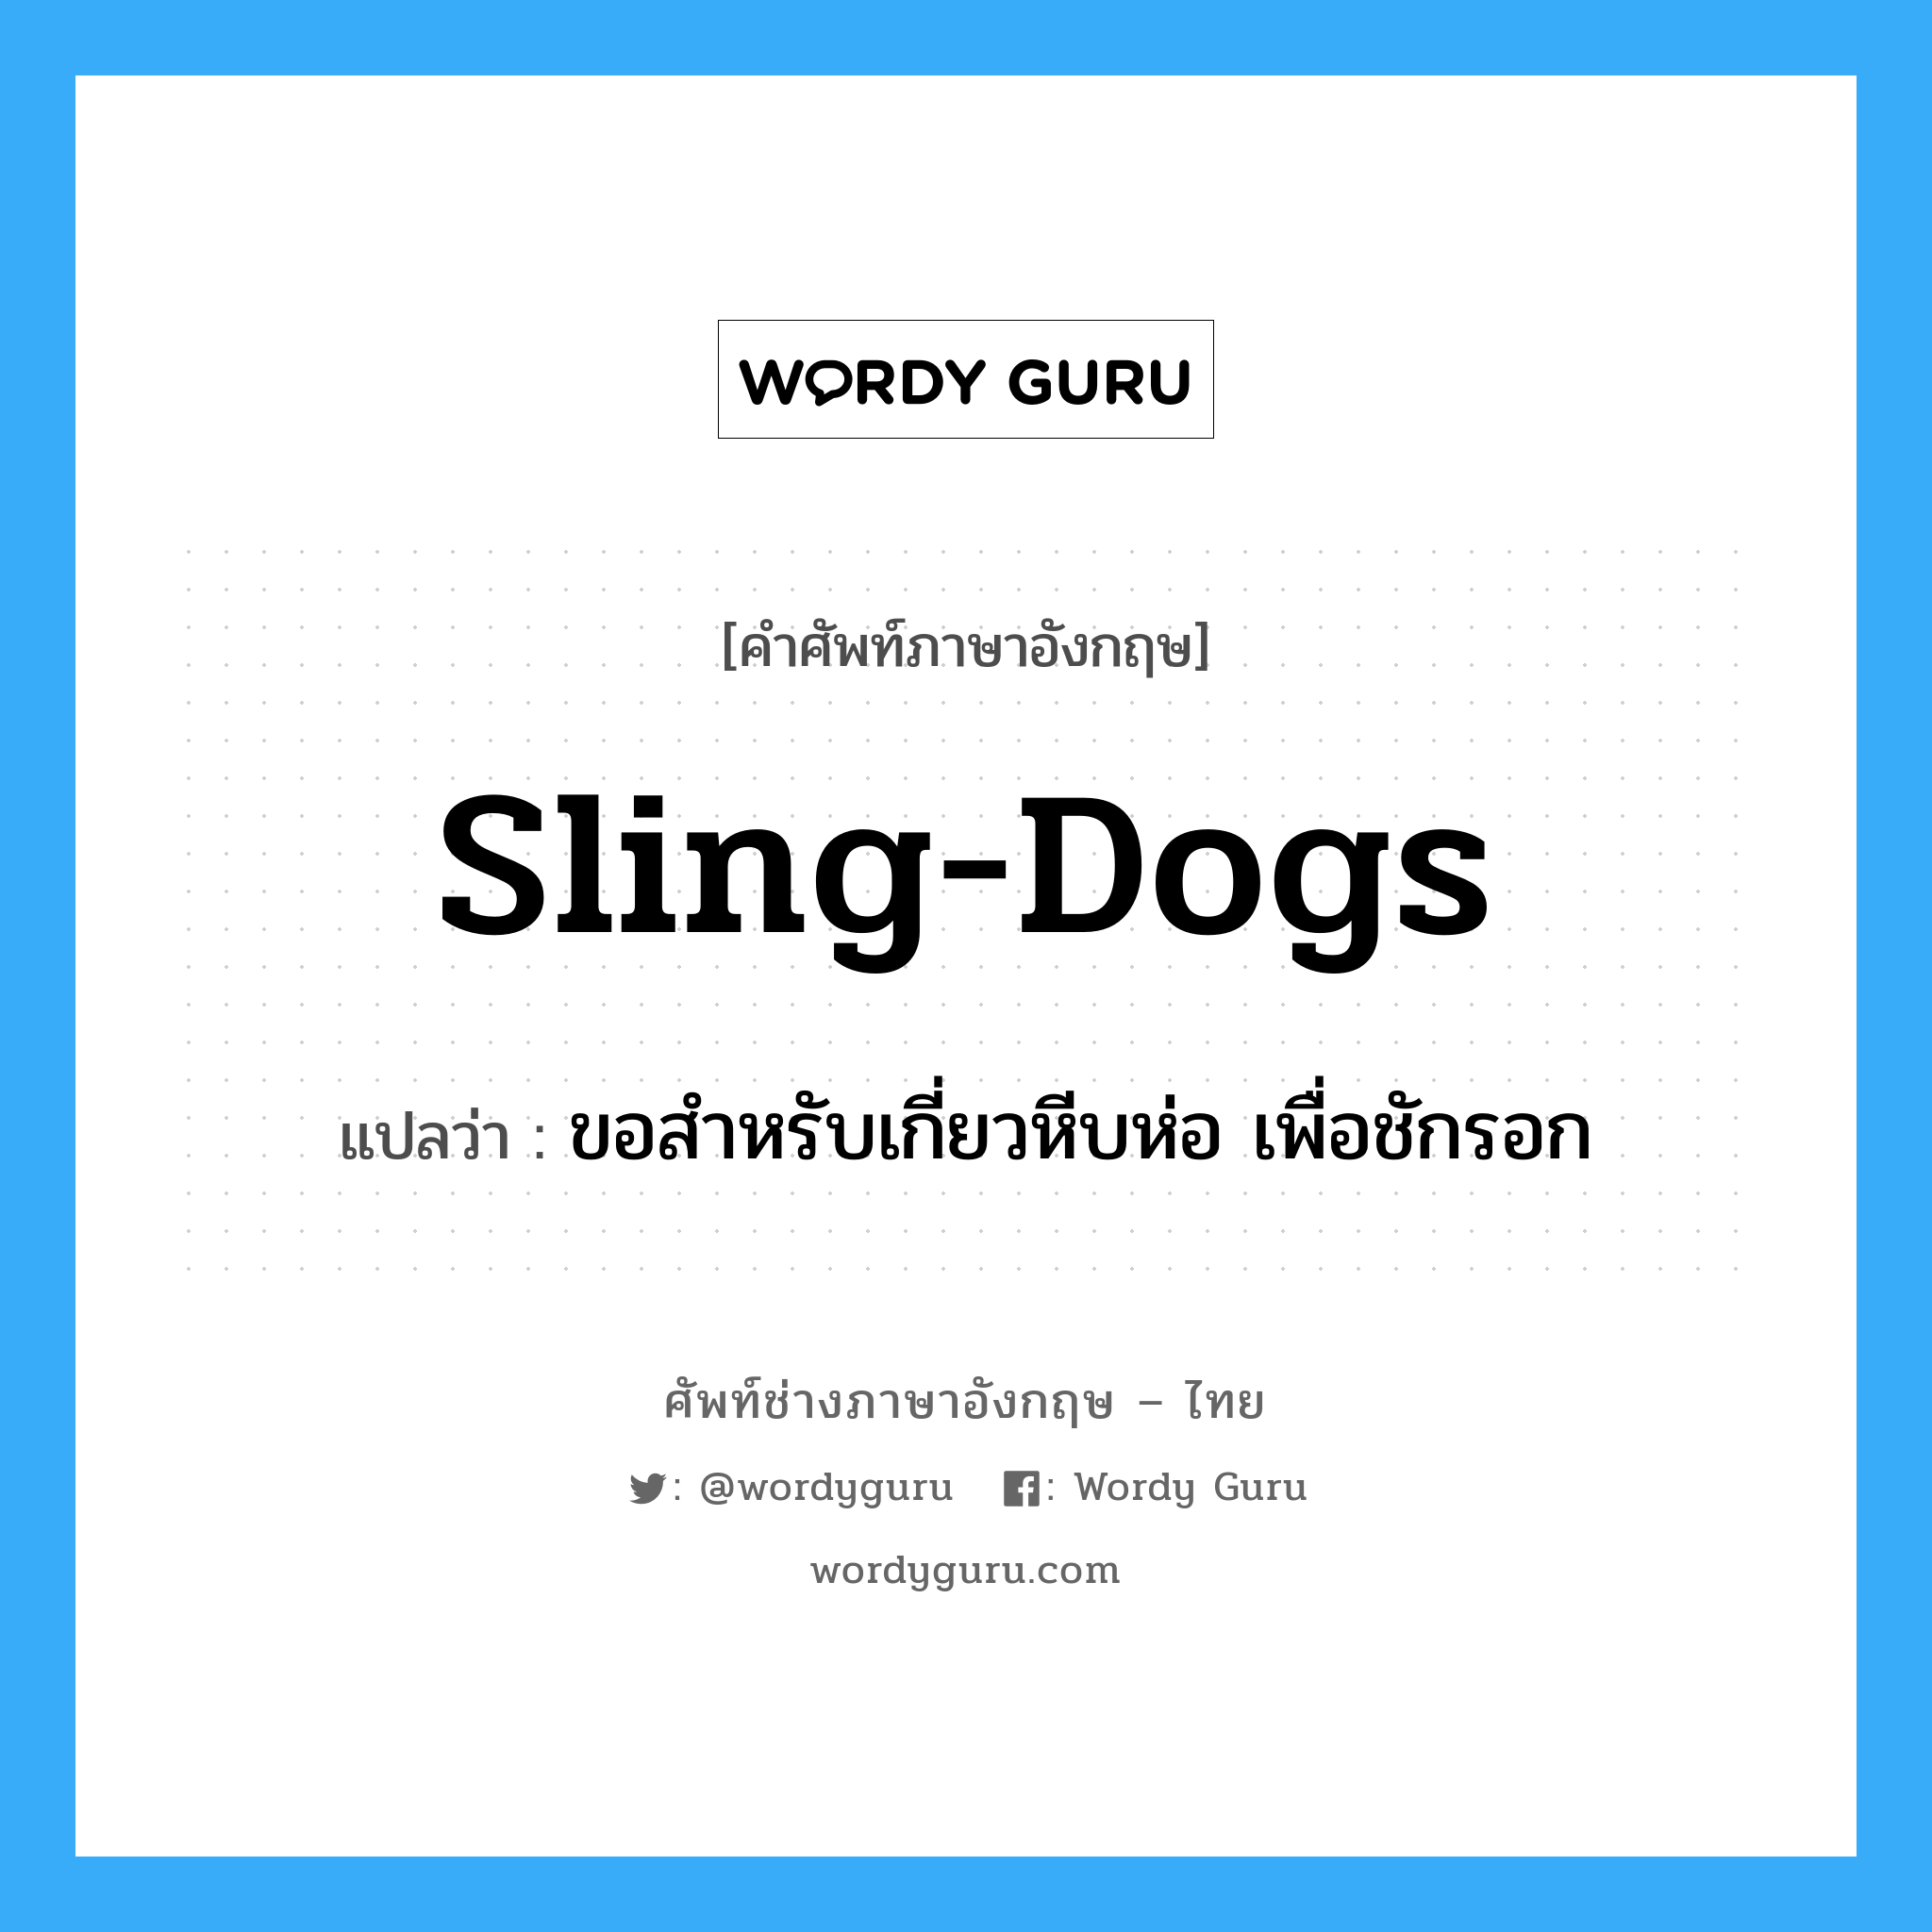 sling-dogs แปลว่า?, คำศัพท์ช่างภาษาอังกฤษ - ไทย sling-dogs คำศัพท์ภาษาอังกฤษ sling-dogs แปลว่า ขอสำหรับเกี่ยวหีบห่อ เพื่อชักรอก